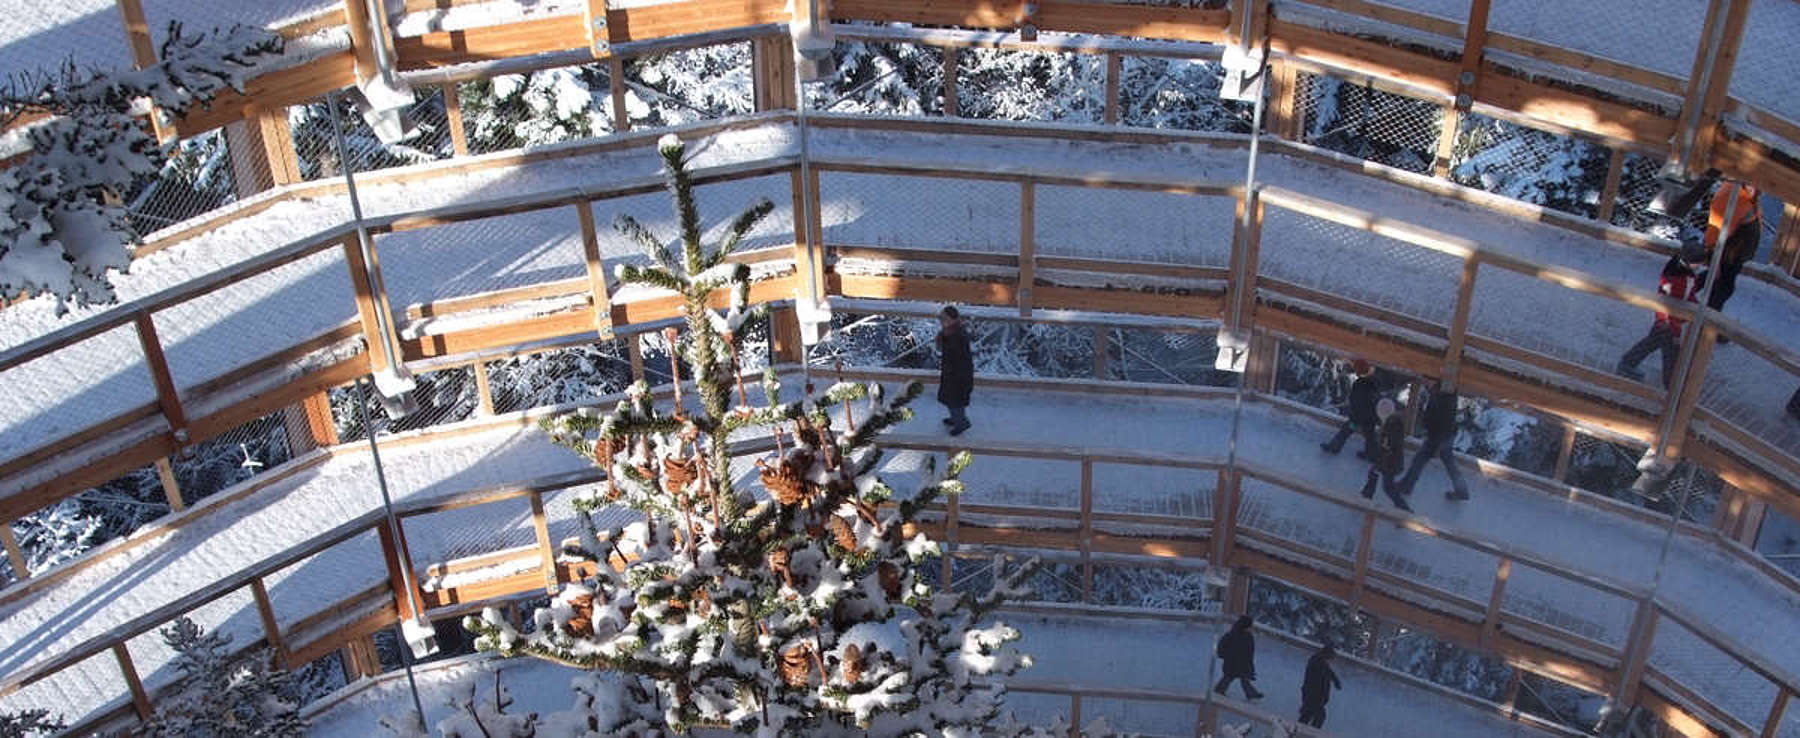 Der verschneite Baumwipfelpfad wird im Winter geräumt